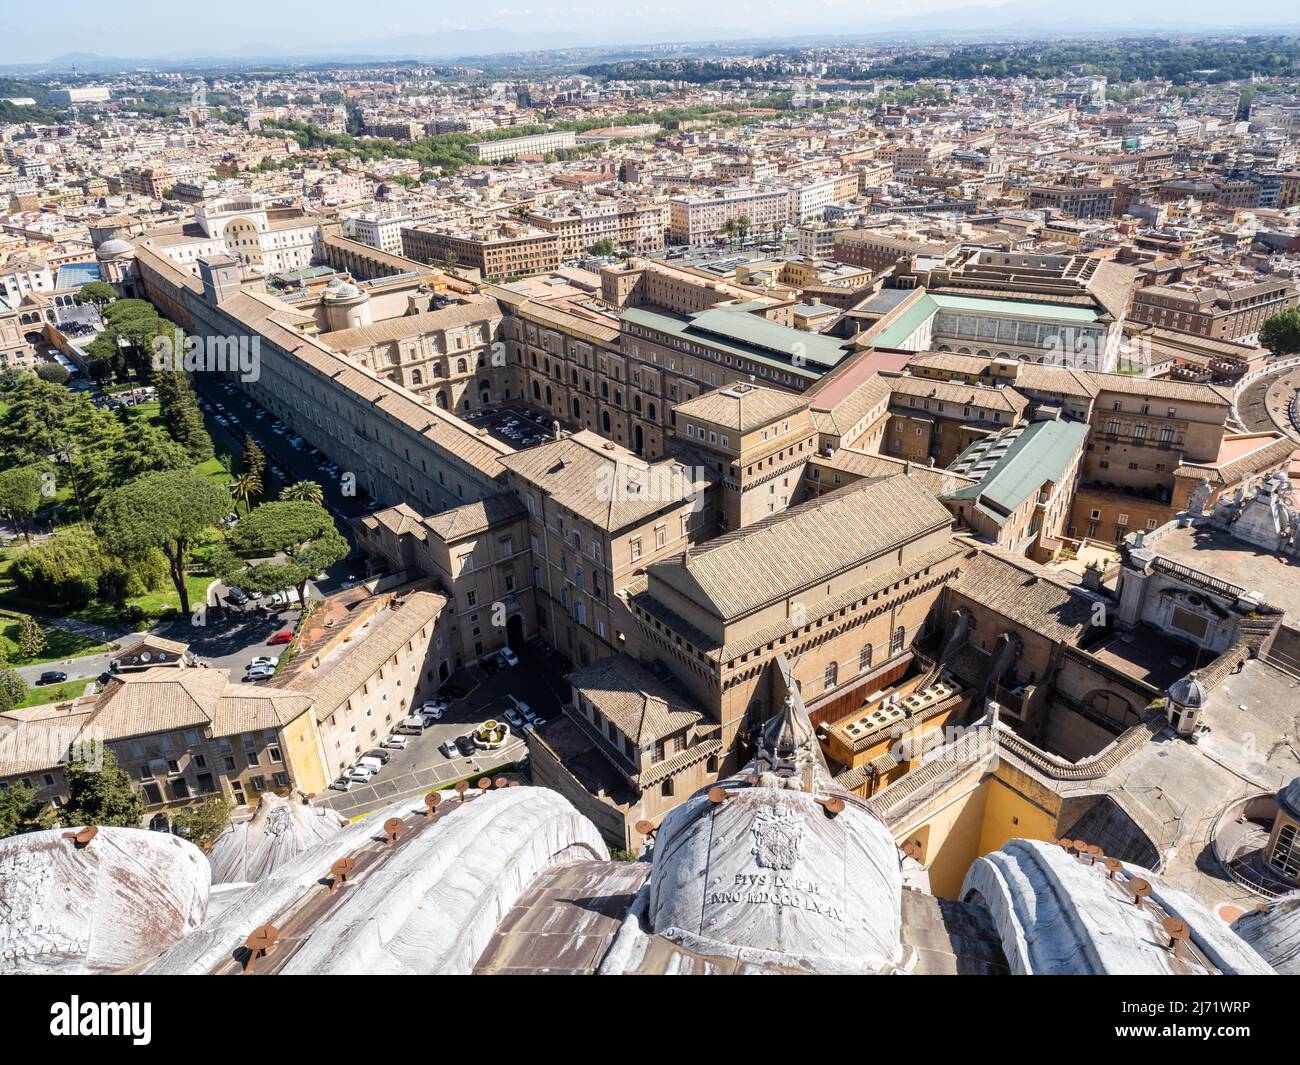 Ausblick von der Kuppel der Basilika San Pietro oder Petersdom auf die Vatikanischen Museen, Vatikanstaat, Vatikan, Rom, Lazio, Italien Foto Stock